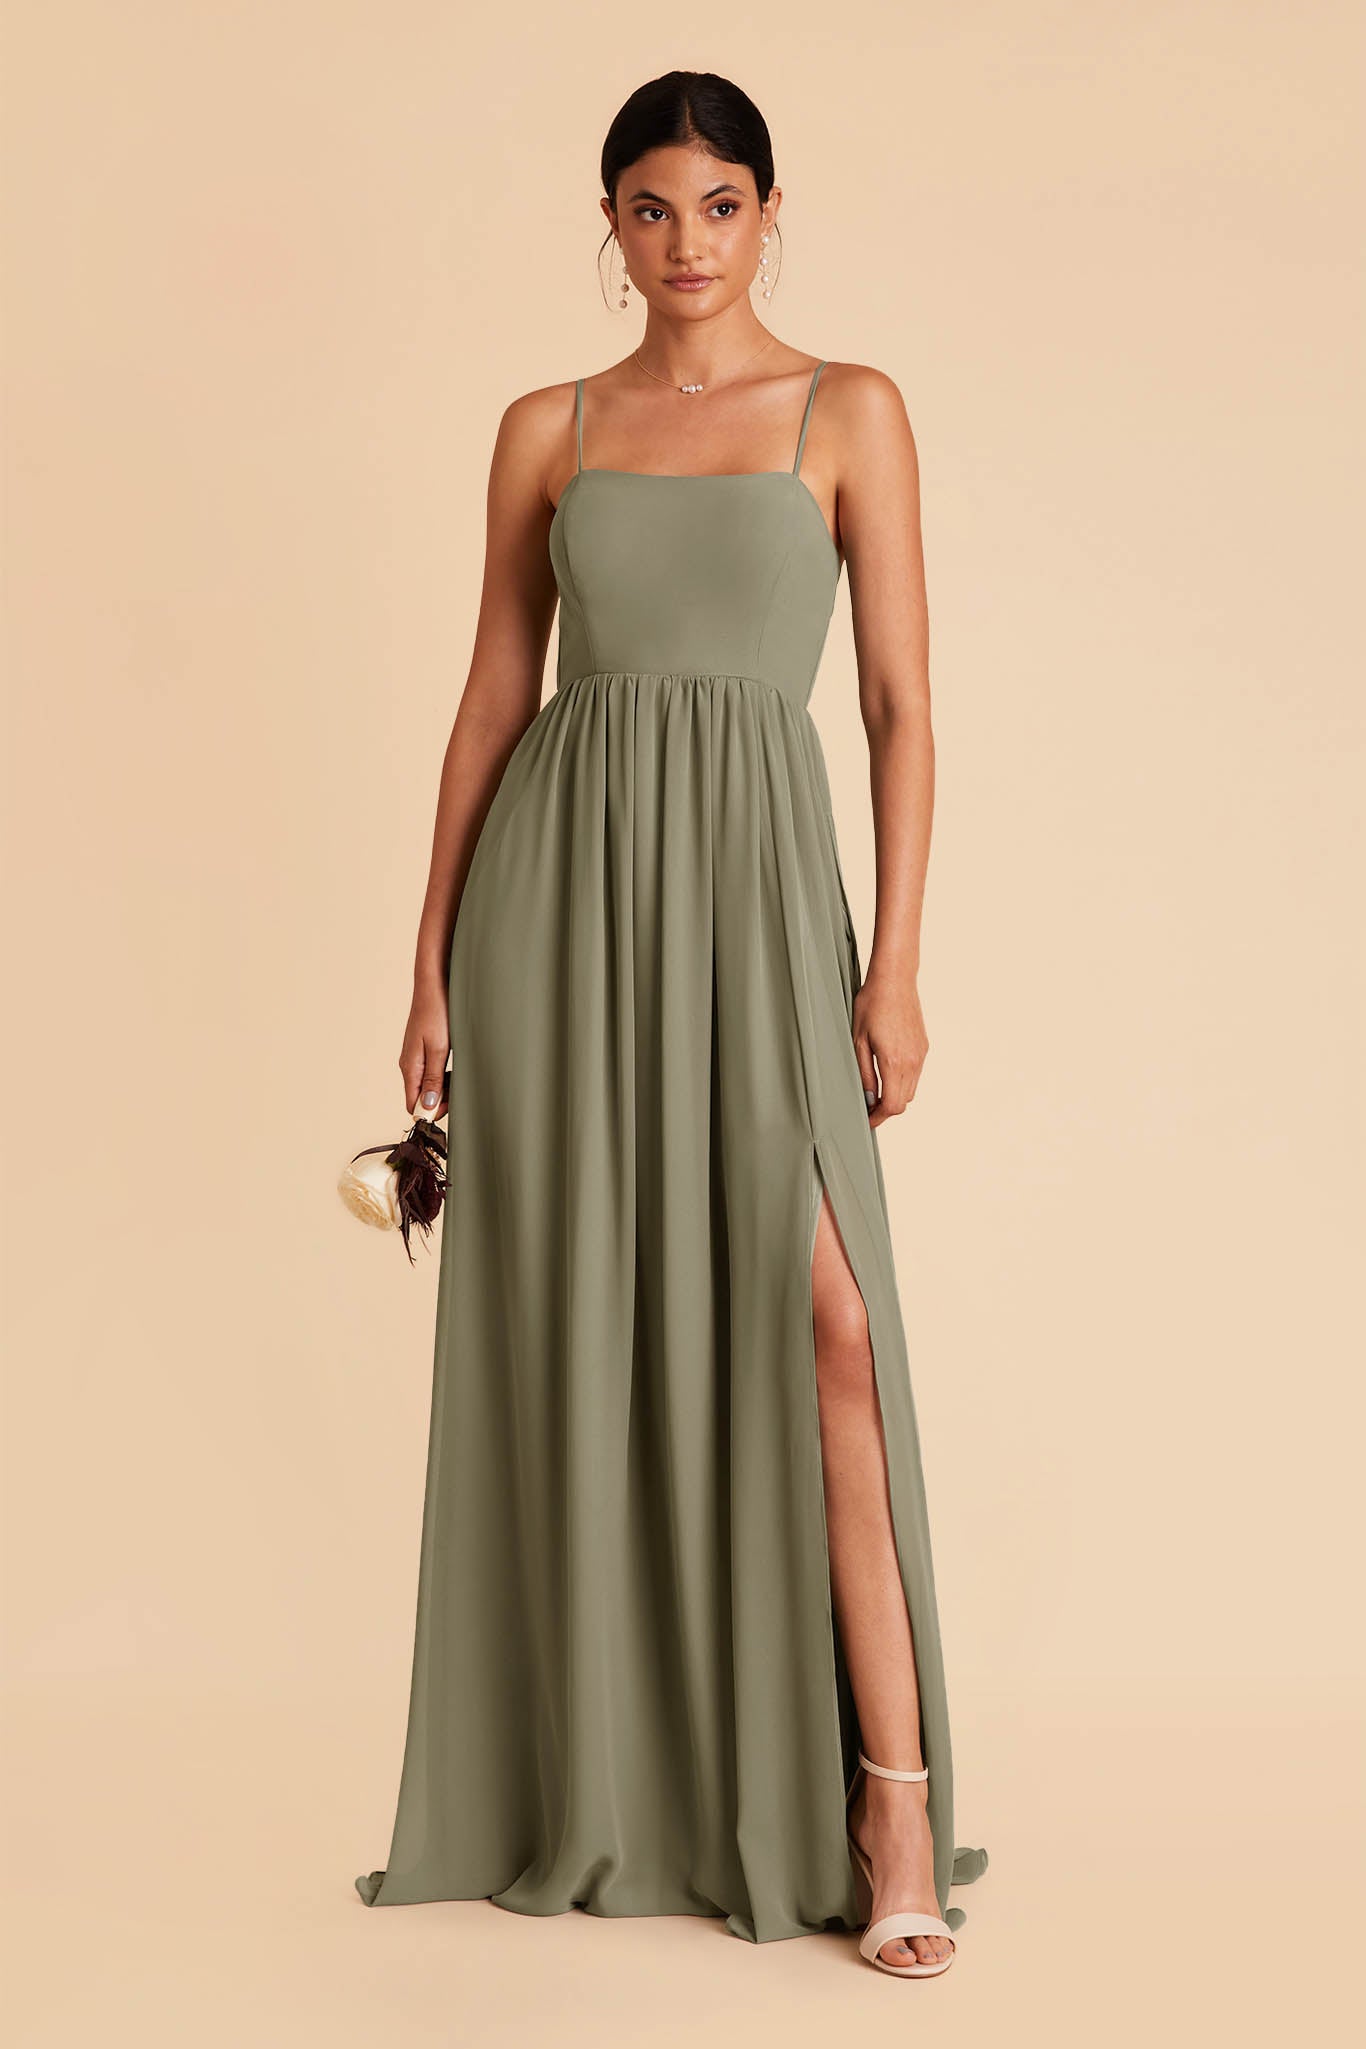 Moss Green August Convertible Dress by Birdy Grey